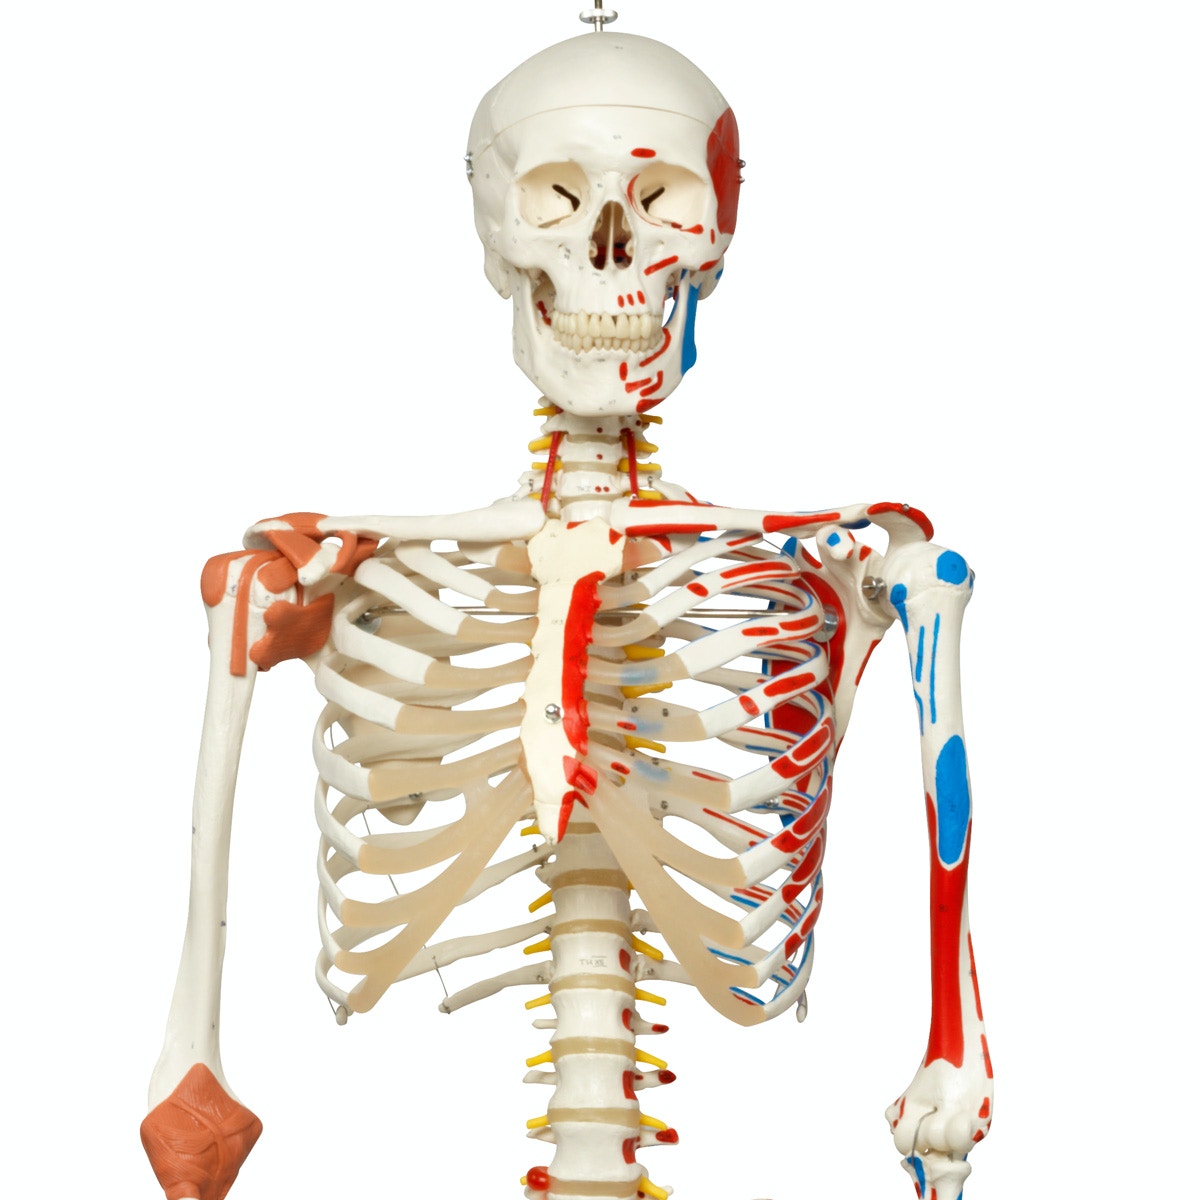 Avanceret skeletmodel i voksen størrelse